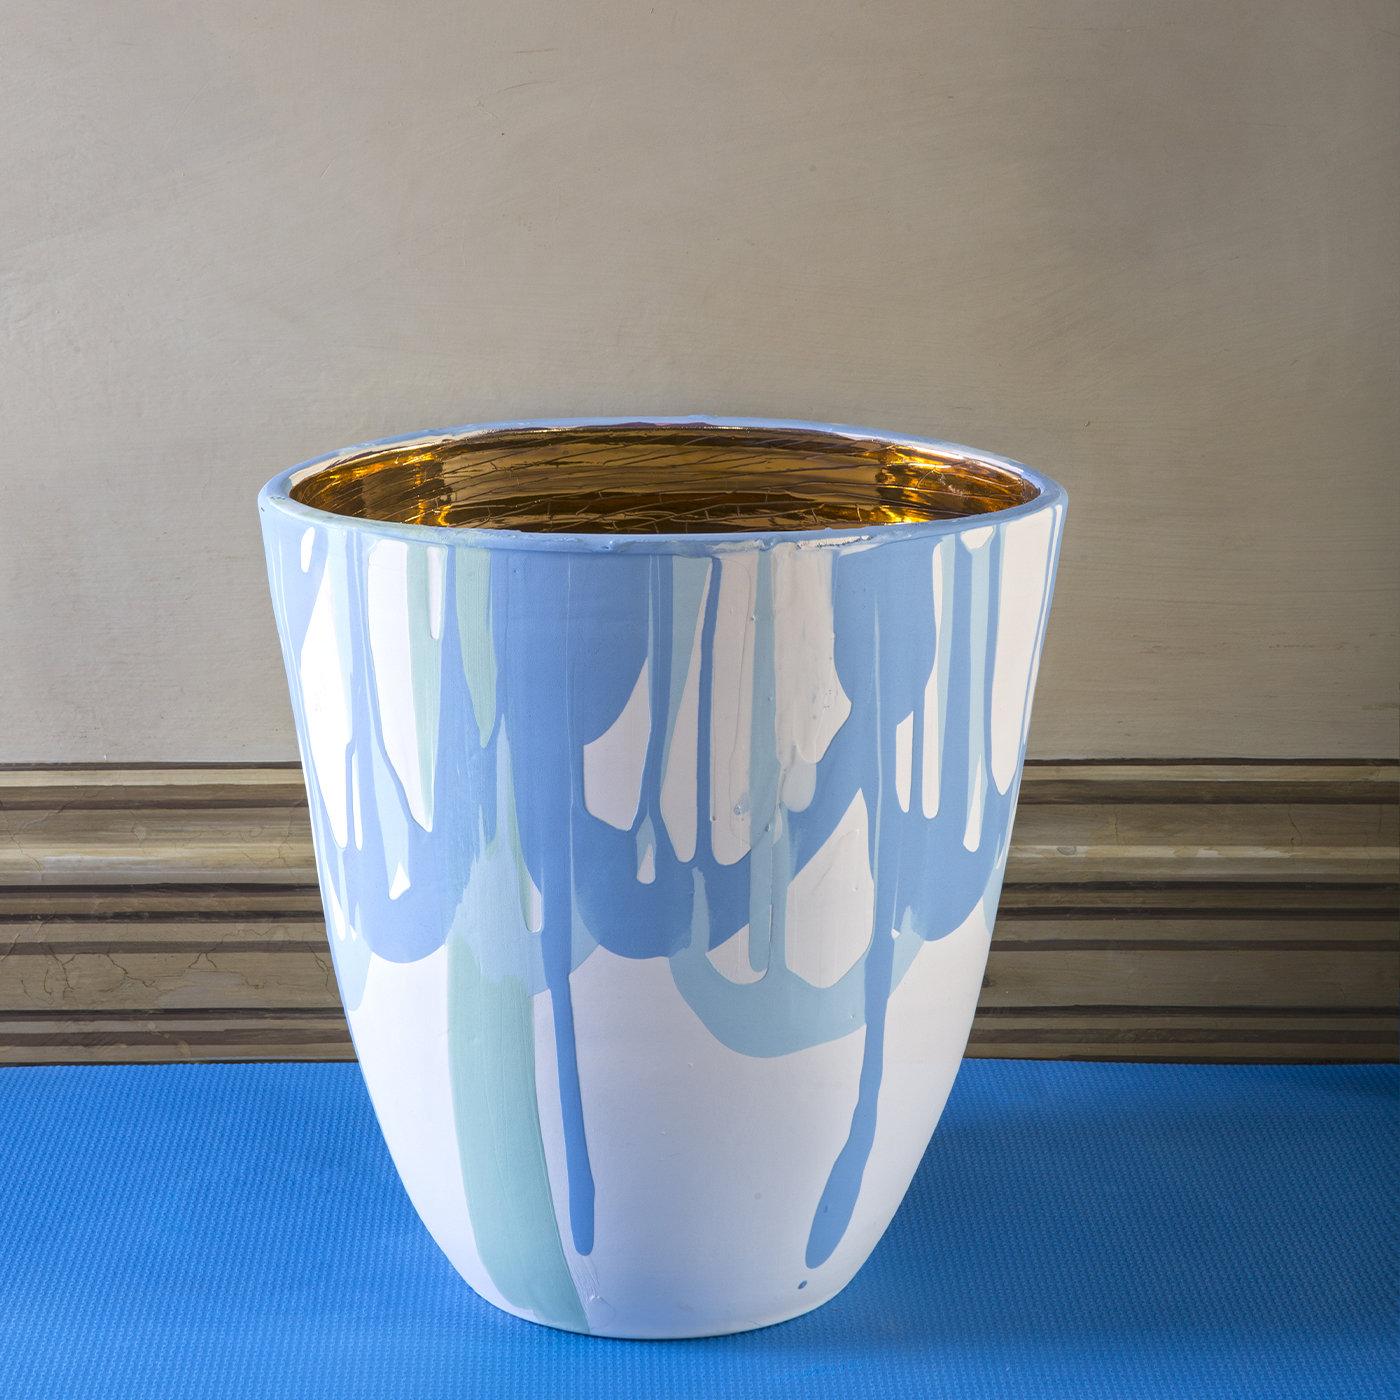 Die Form dieser Vase begann mit dem Becher von Coralla und hat sich allmählich zu einer 32 cm hohen Vase mit ausgestellter Form und elliptischem Mund entwickelt. Bei dieser Keramikserie ist das Innere golden und das Äußere engobiert und durch bunte